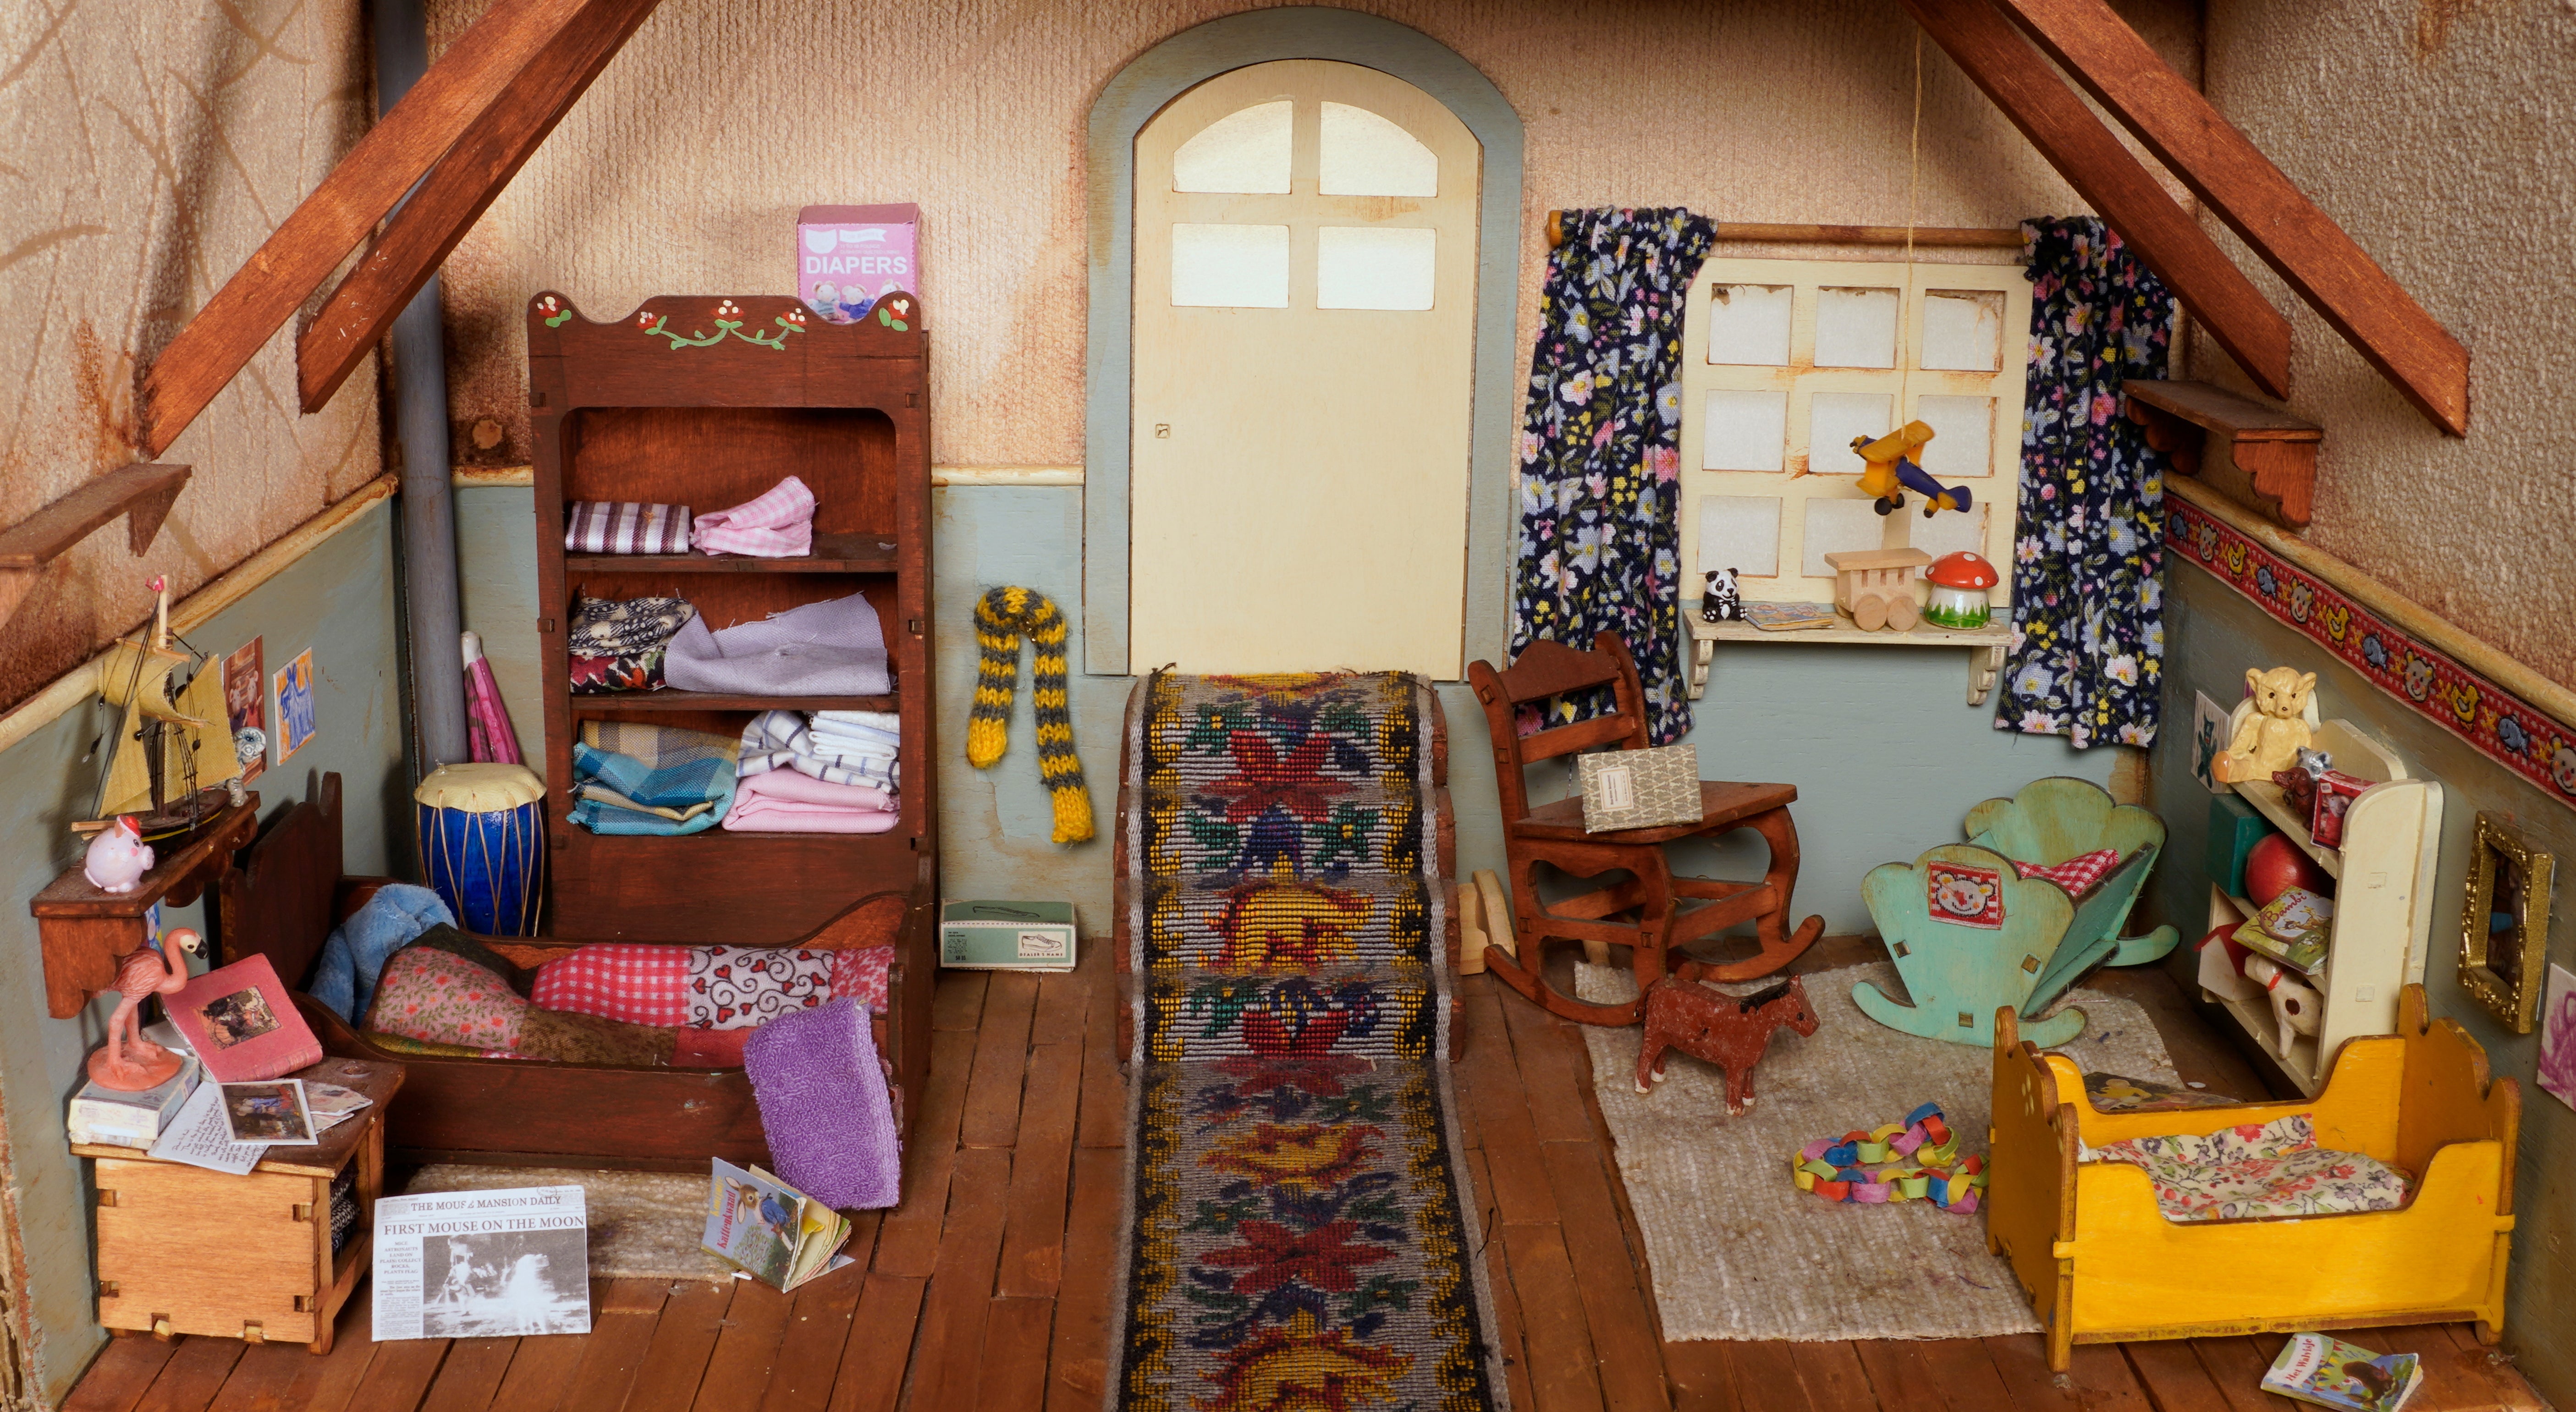 Kit mueblas - Dormitorio infantil